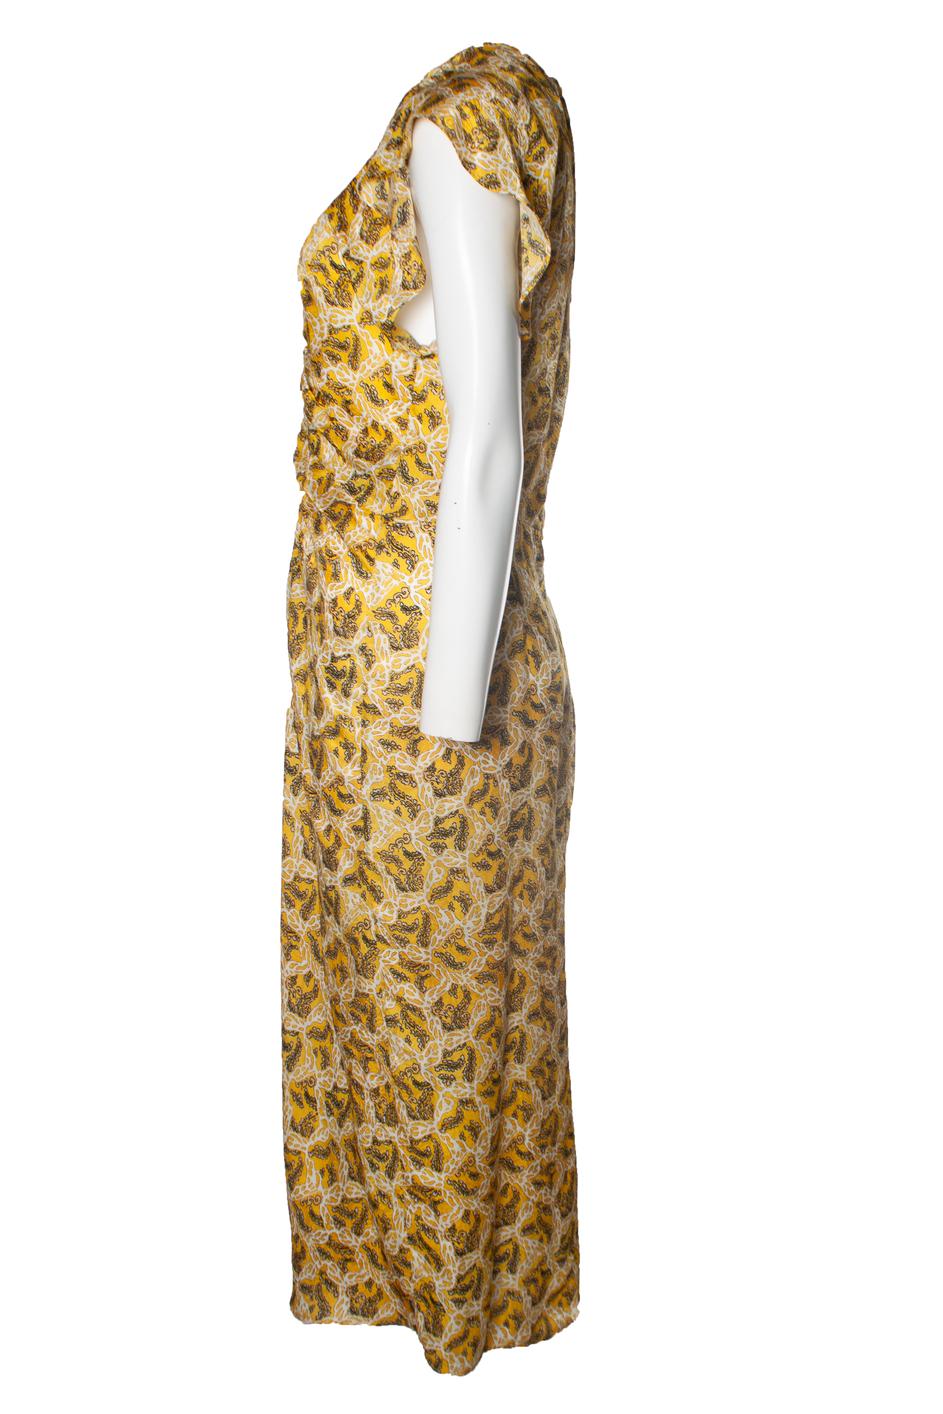 Isabel Marant, Yellow Lyndsay maxi dress with floral print. L'article est en très bon état.

• CONDITION : très bon état. 

• TAILLE : FR40 - M 

• MESURES : longueur 121 cm, largeur 40 cm, taille 38 cm, largeur des épaules 42 cm

• MATERIAL : 65%